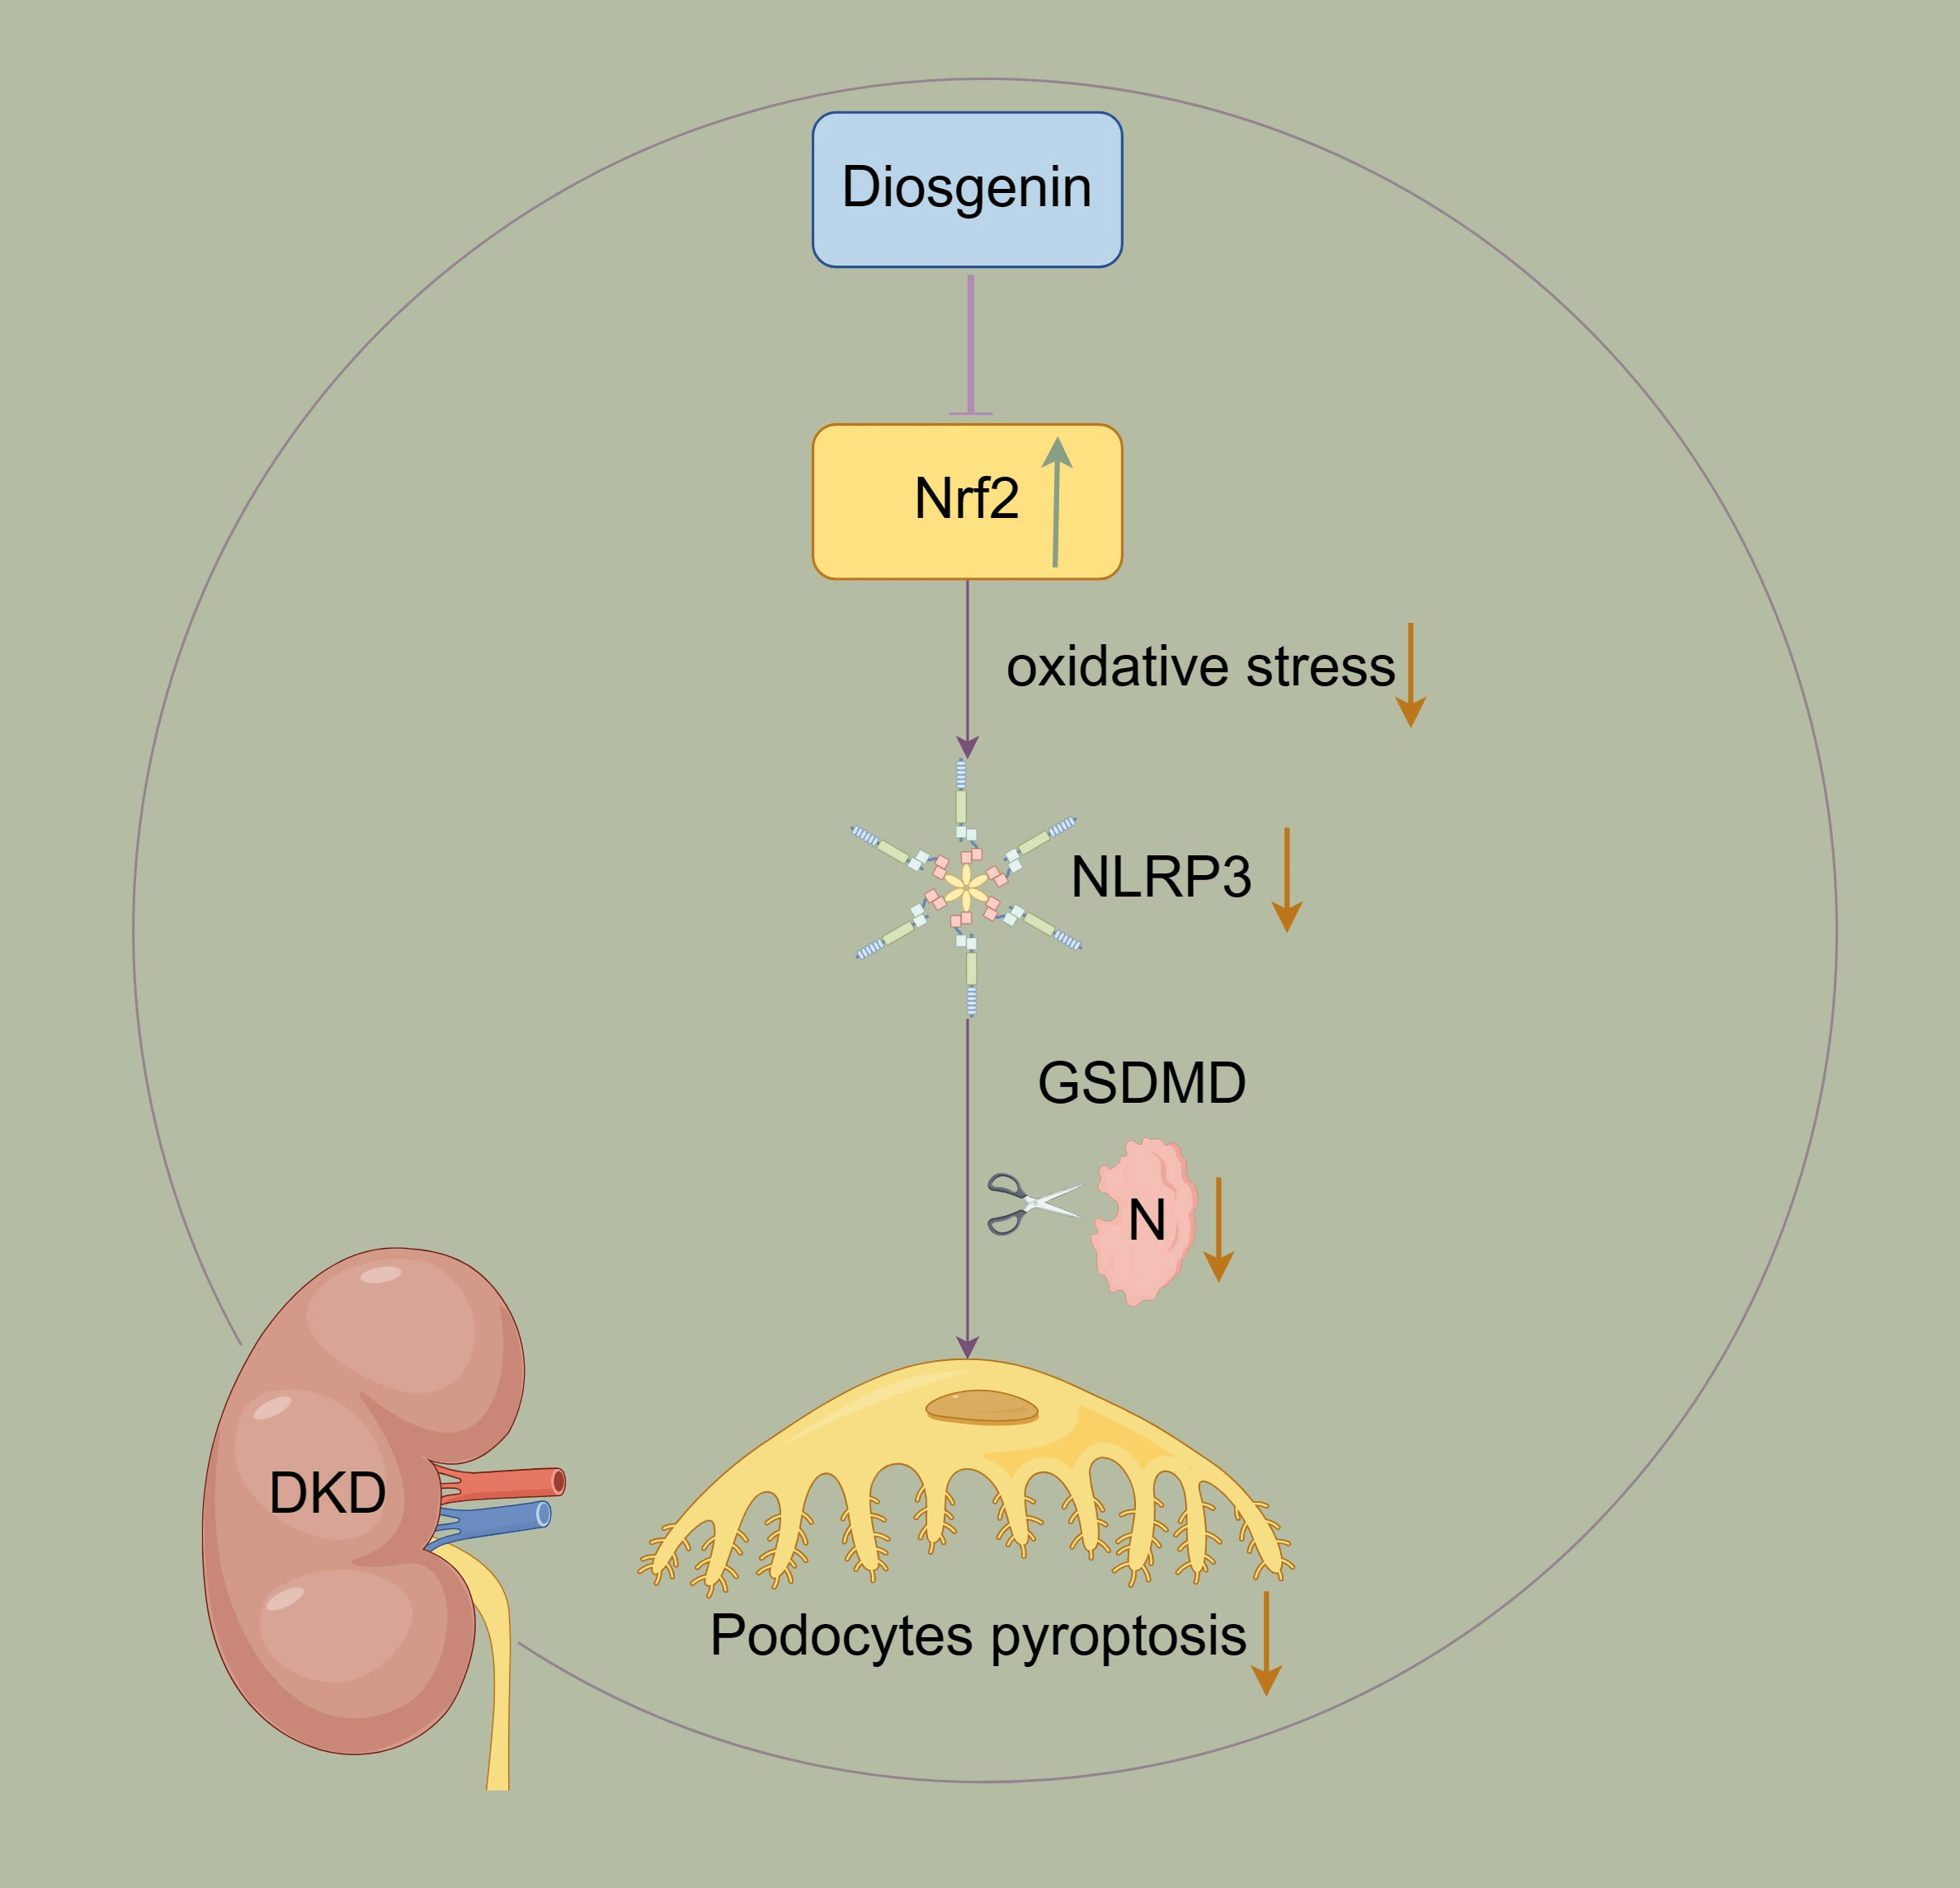 Diosgenin inhibited podocyte pyroptosis in diabetic kidney disease by regulating the Nrf2/NLRP3 pathway